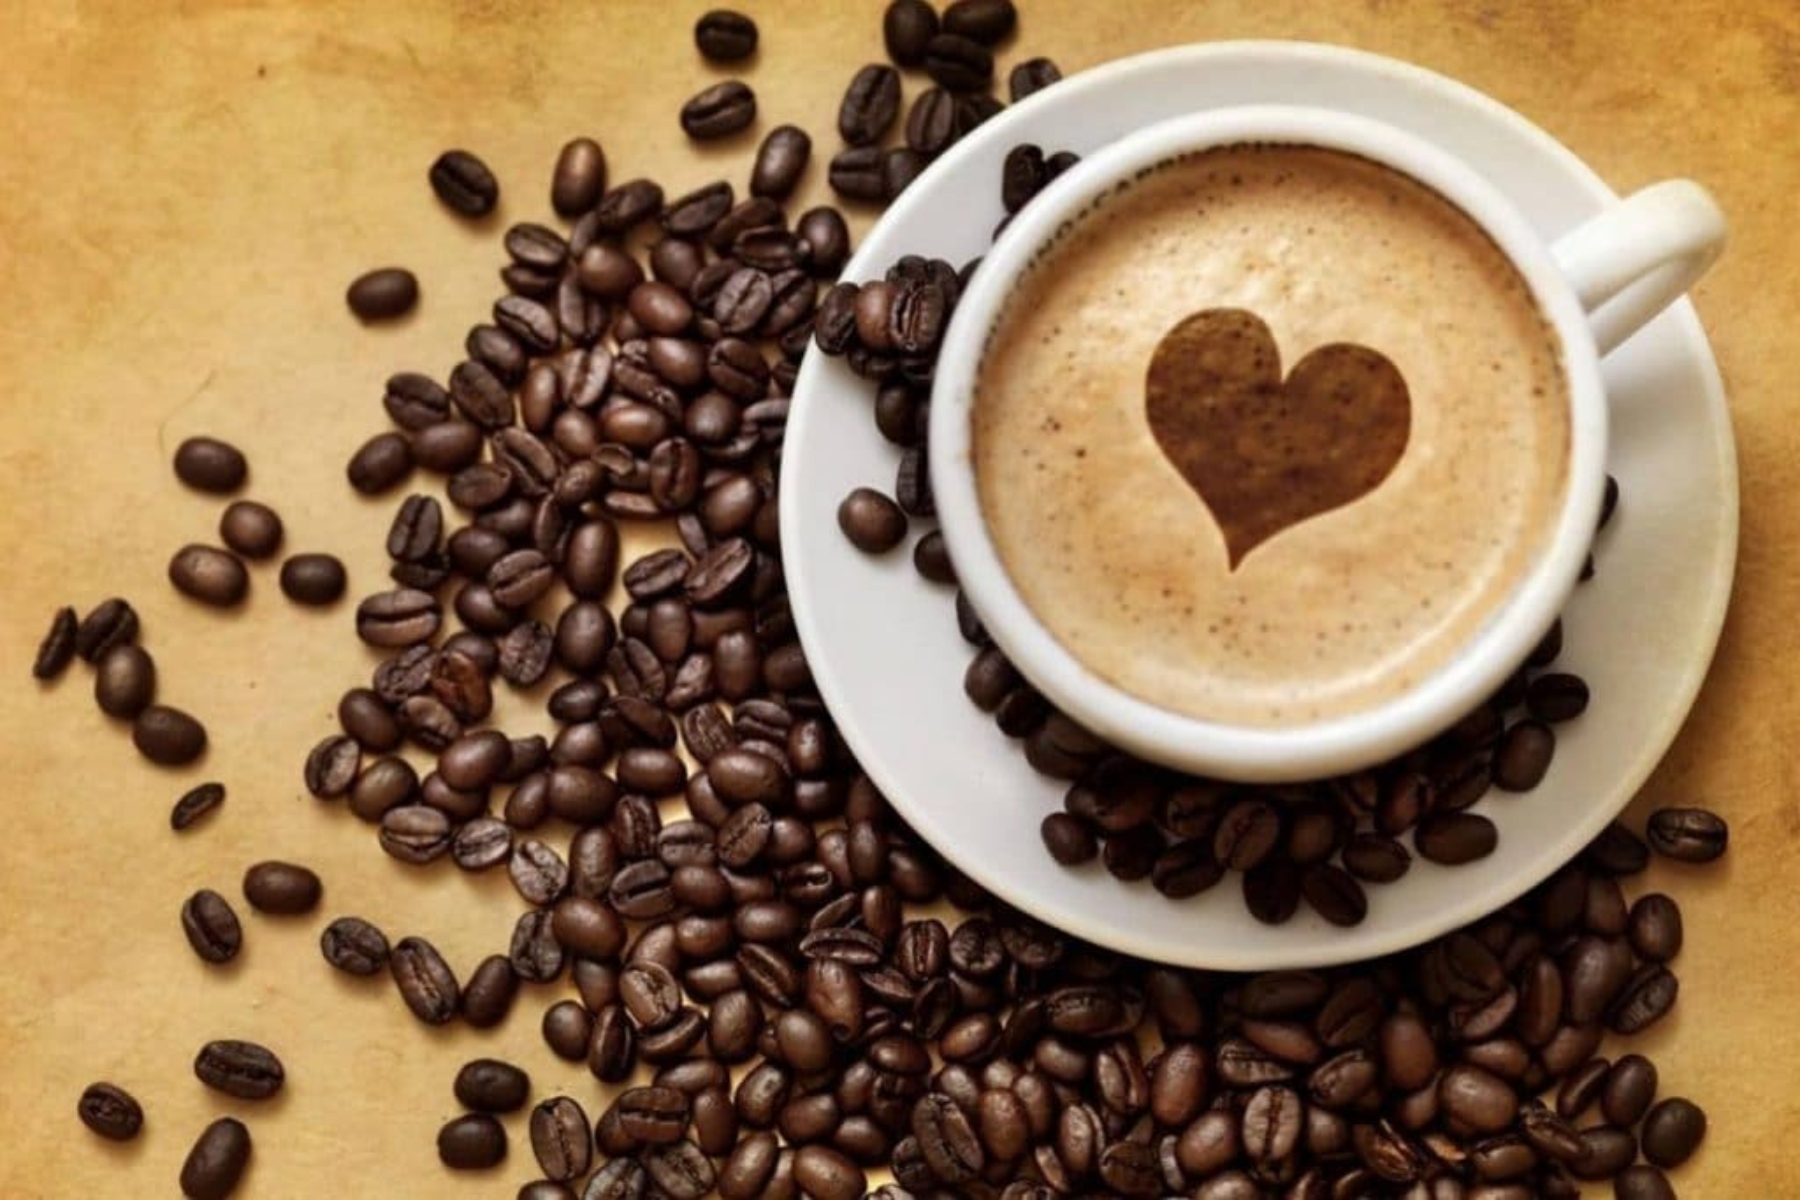 Καφεΐνη: Ποια είναι τα οφέλη του καφέ σύμφωνα με τις τελευταίες μελέτες;